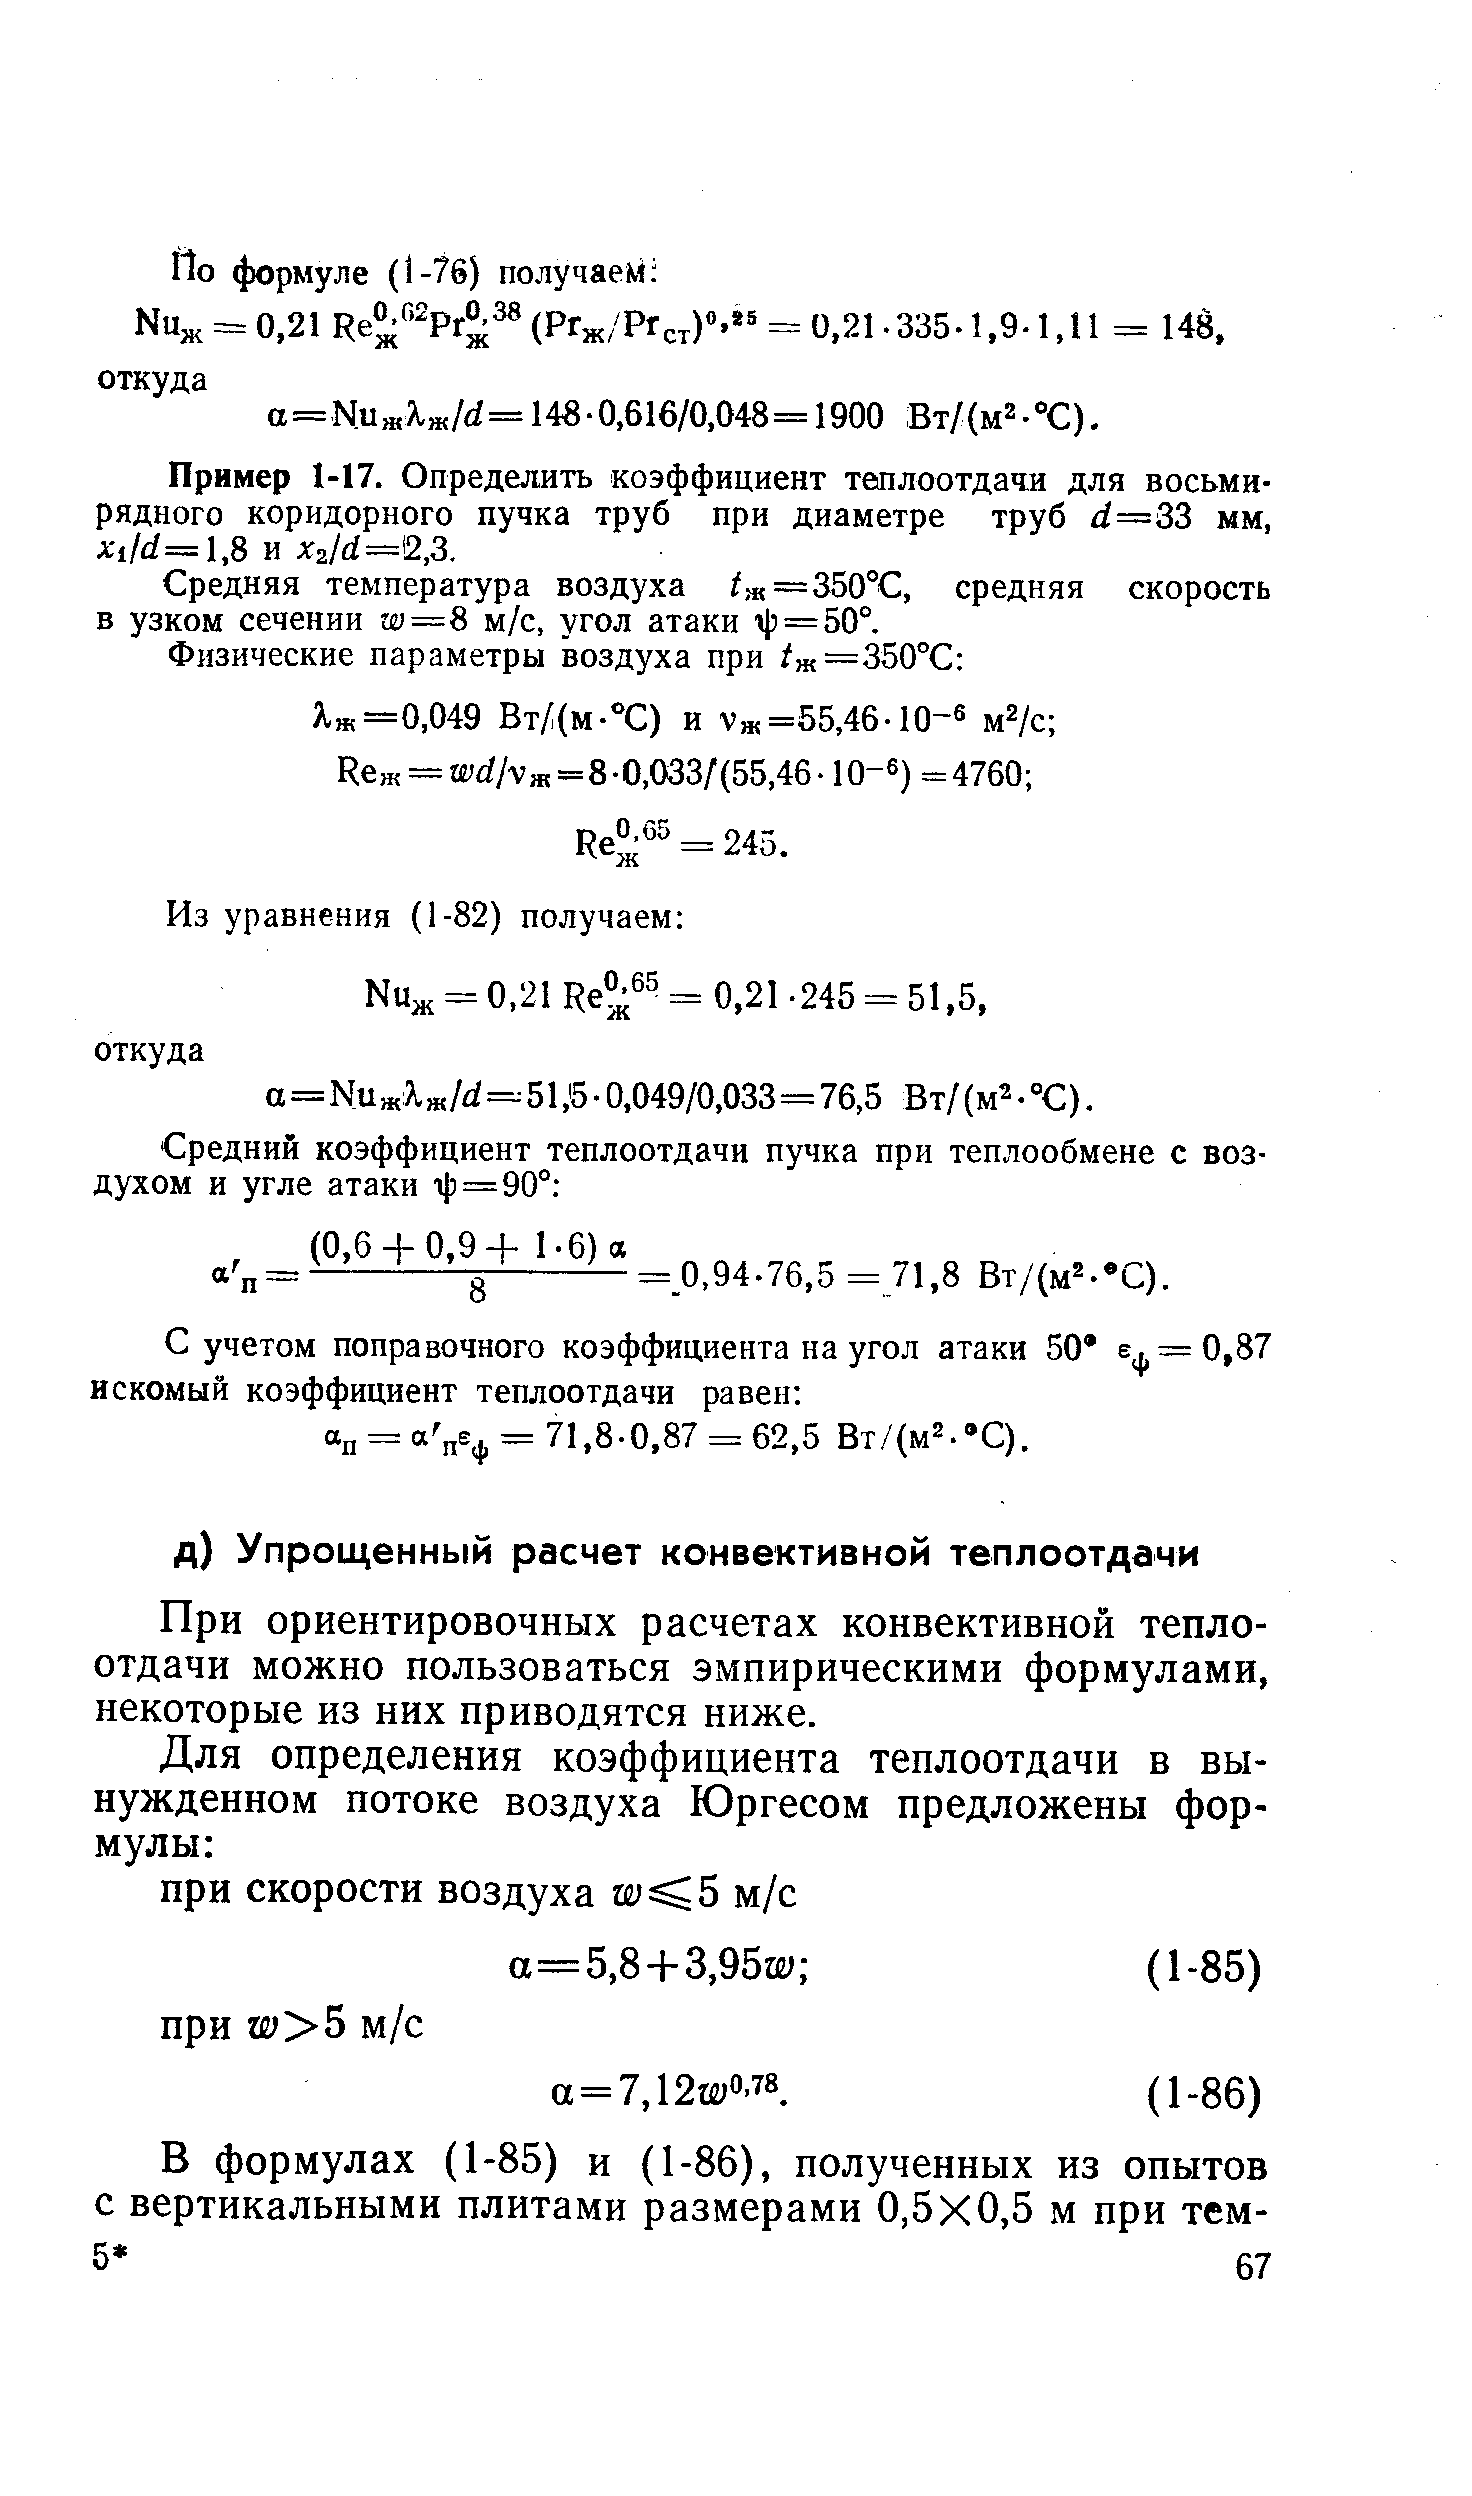 При ориентировочных расчетах конвективной теплоотдачи можно пользоваться эмпирическими формулами, некоторые из них приводятся ниже.
